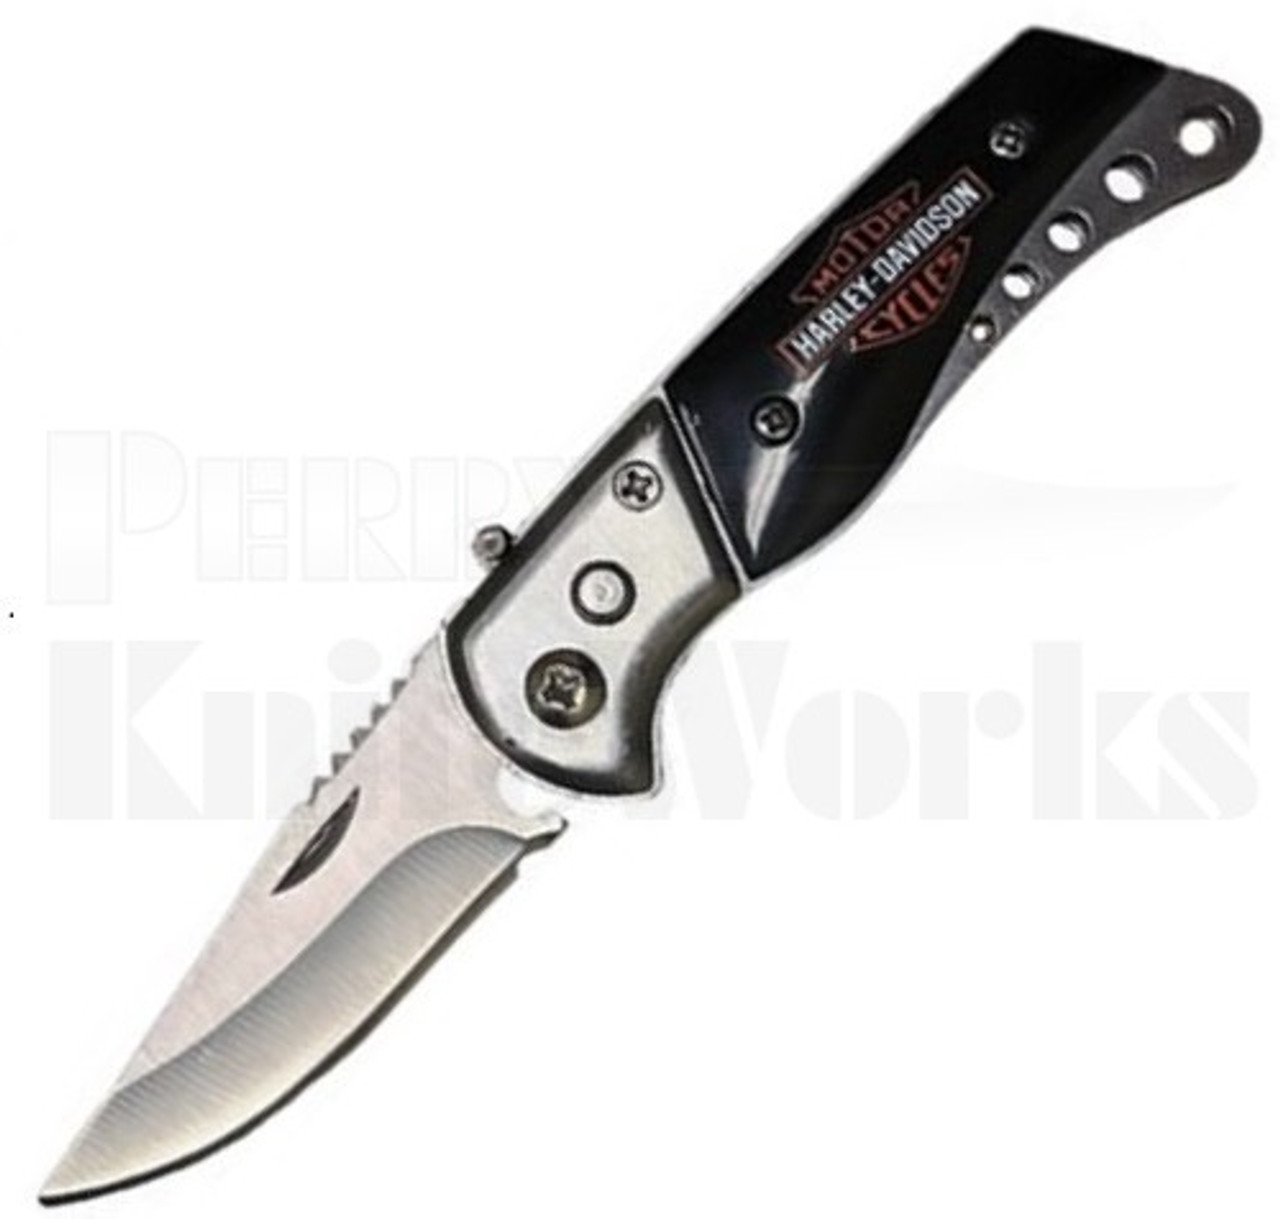 AccuSharp Knife Sharpeners - Davison's Logo - Red Handle